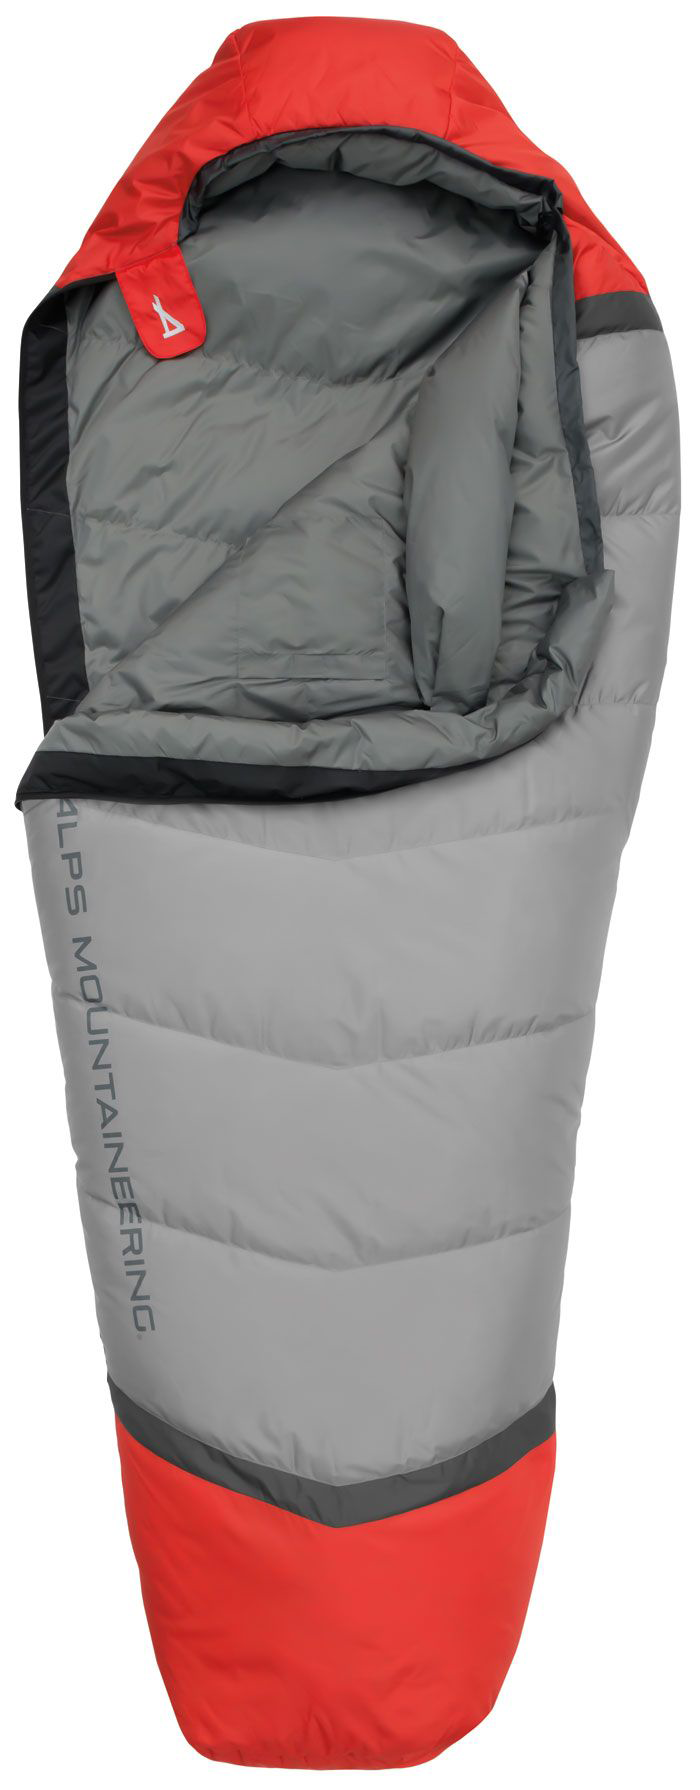 Alps Mountaineering Zenith 30 Mummy Sleeping Bag - Long